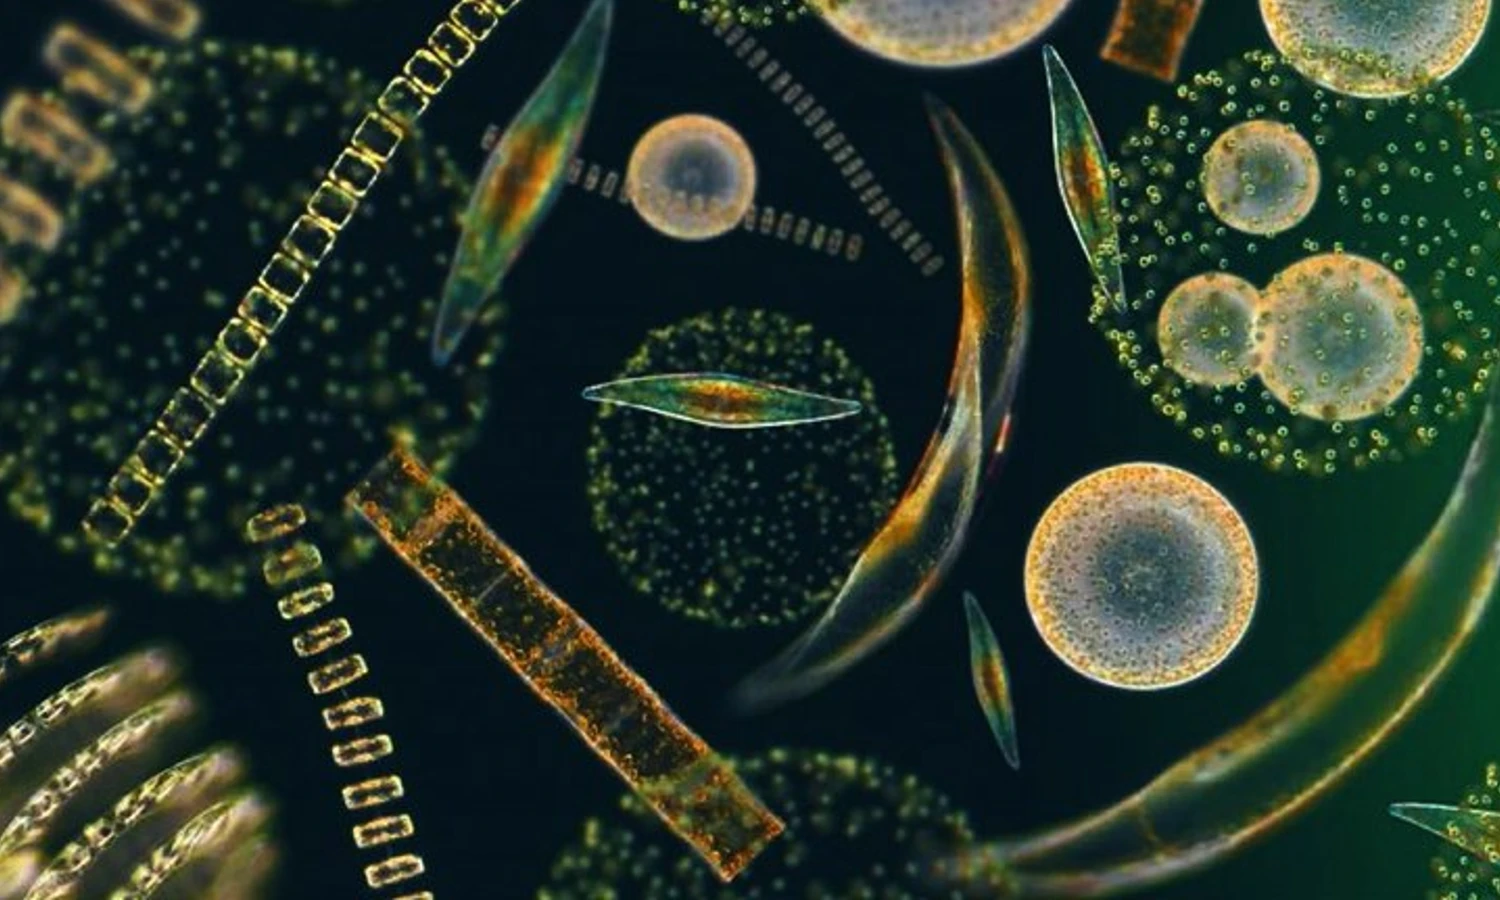 Фитопланктон дать определение